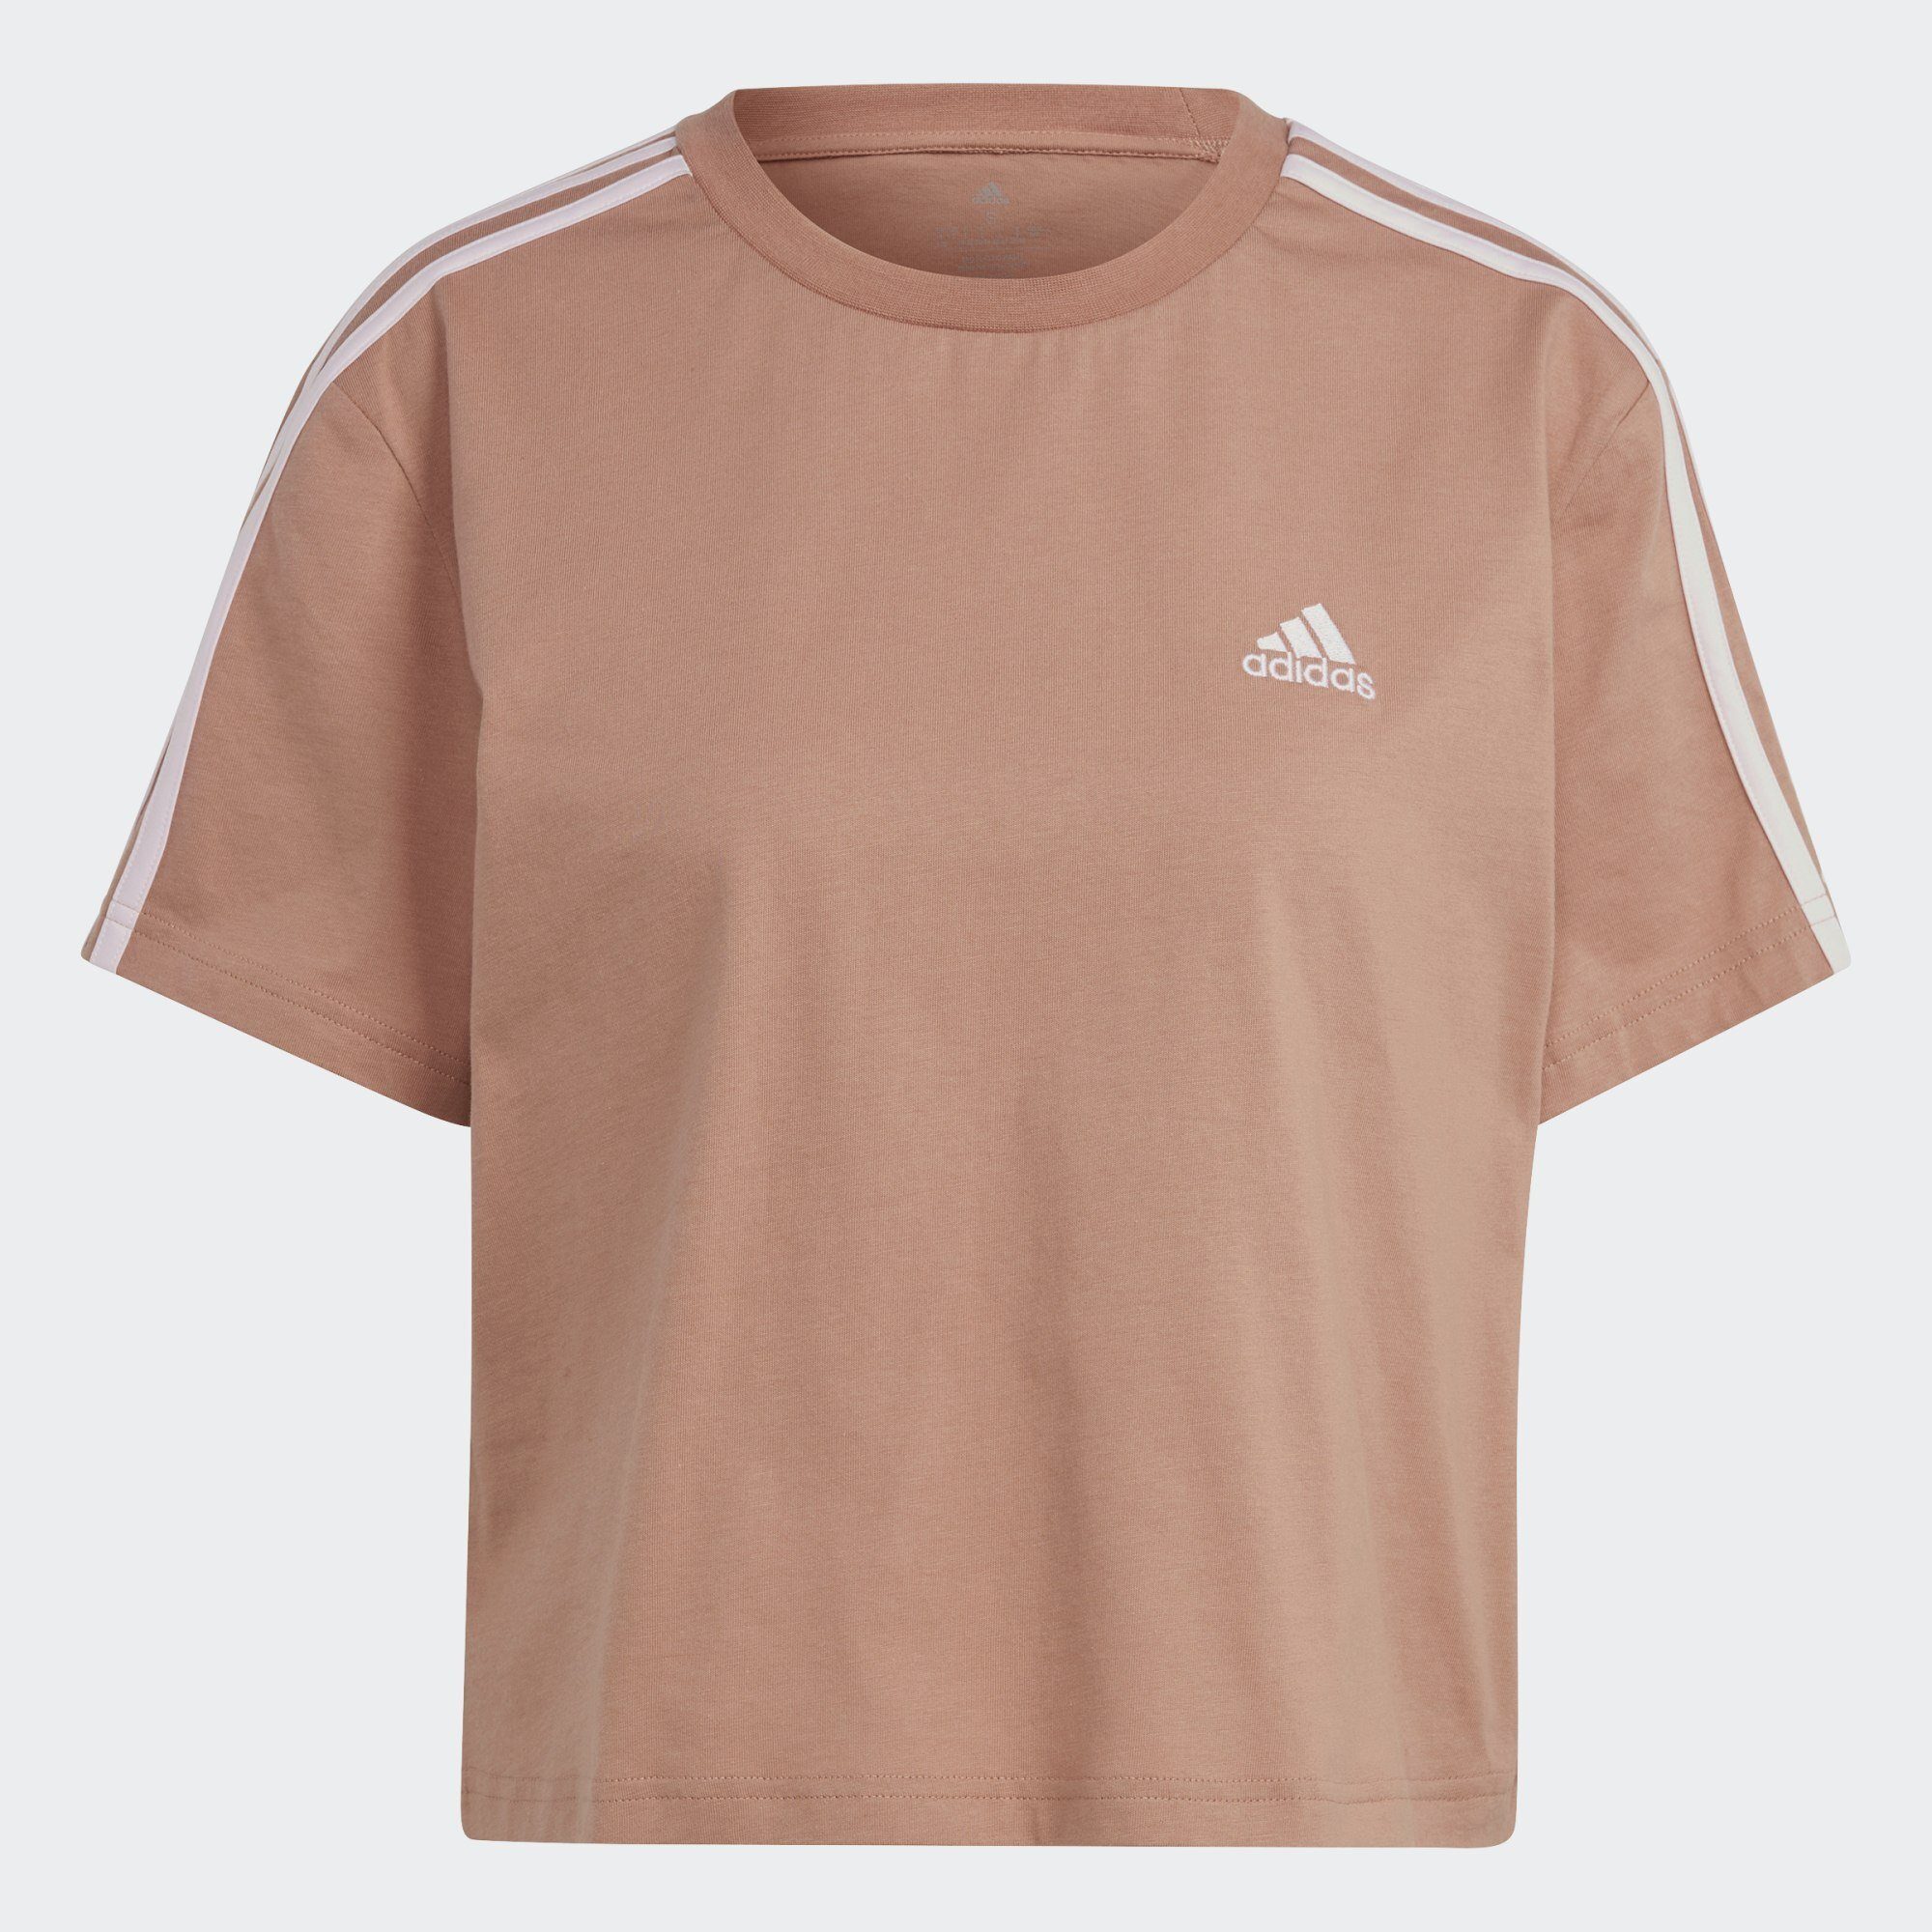 / Sportswear Clay CROP-TOP ESSENTIALS adidas Strata T-Shirt 3-STREIFEN JERSEY Clear SINGLE Pink